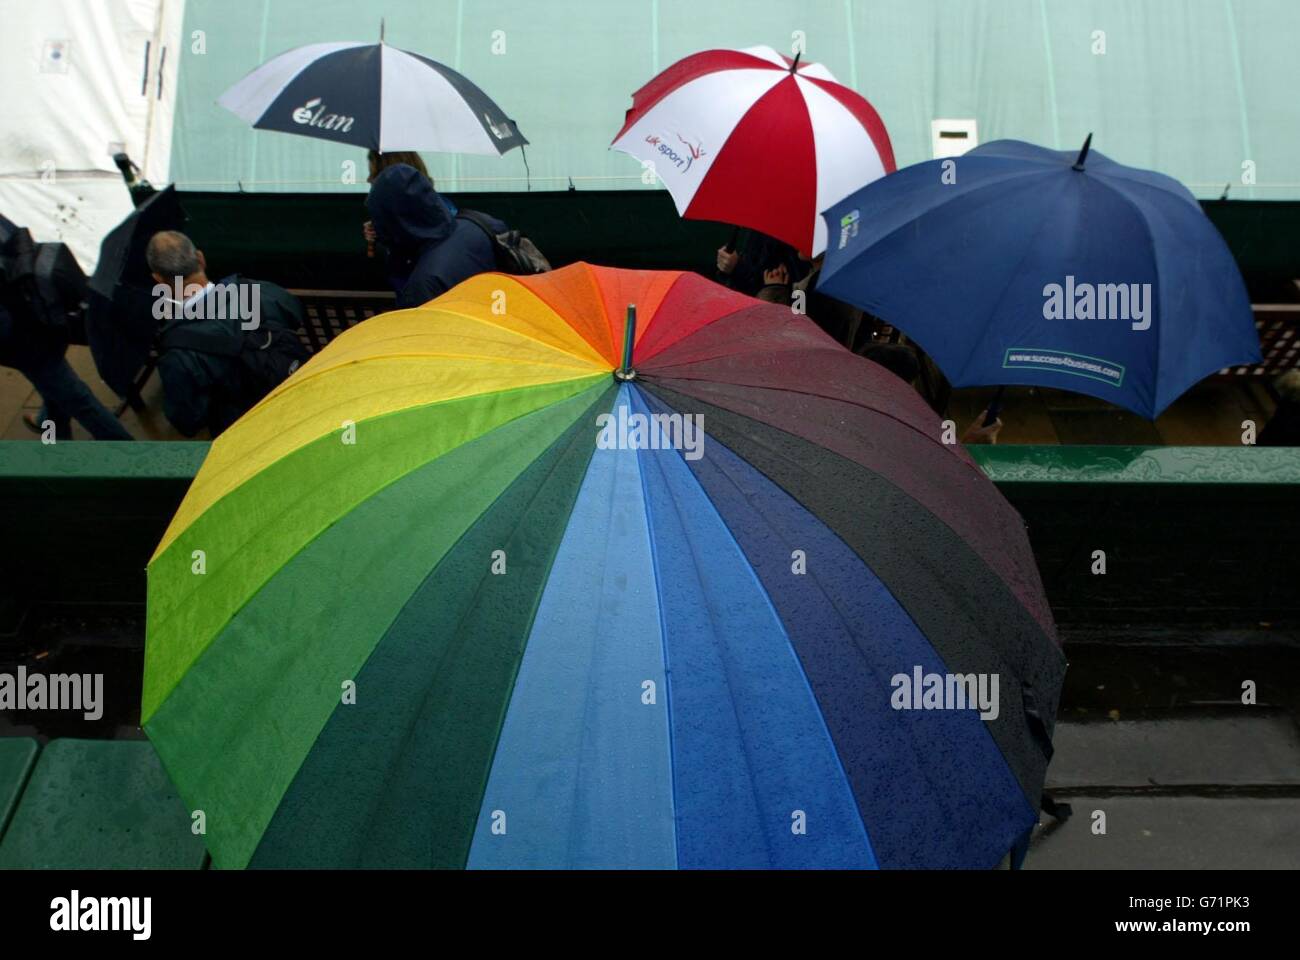 Raining at Wimbledon Stock Photo